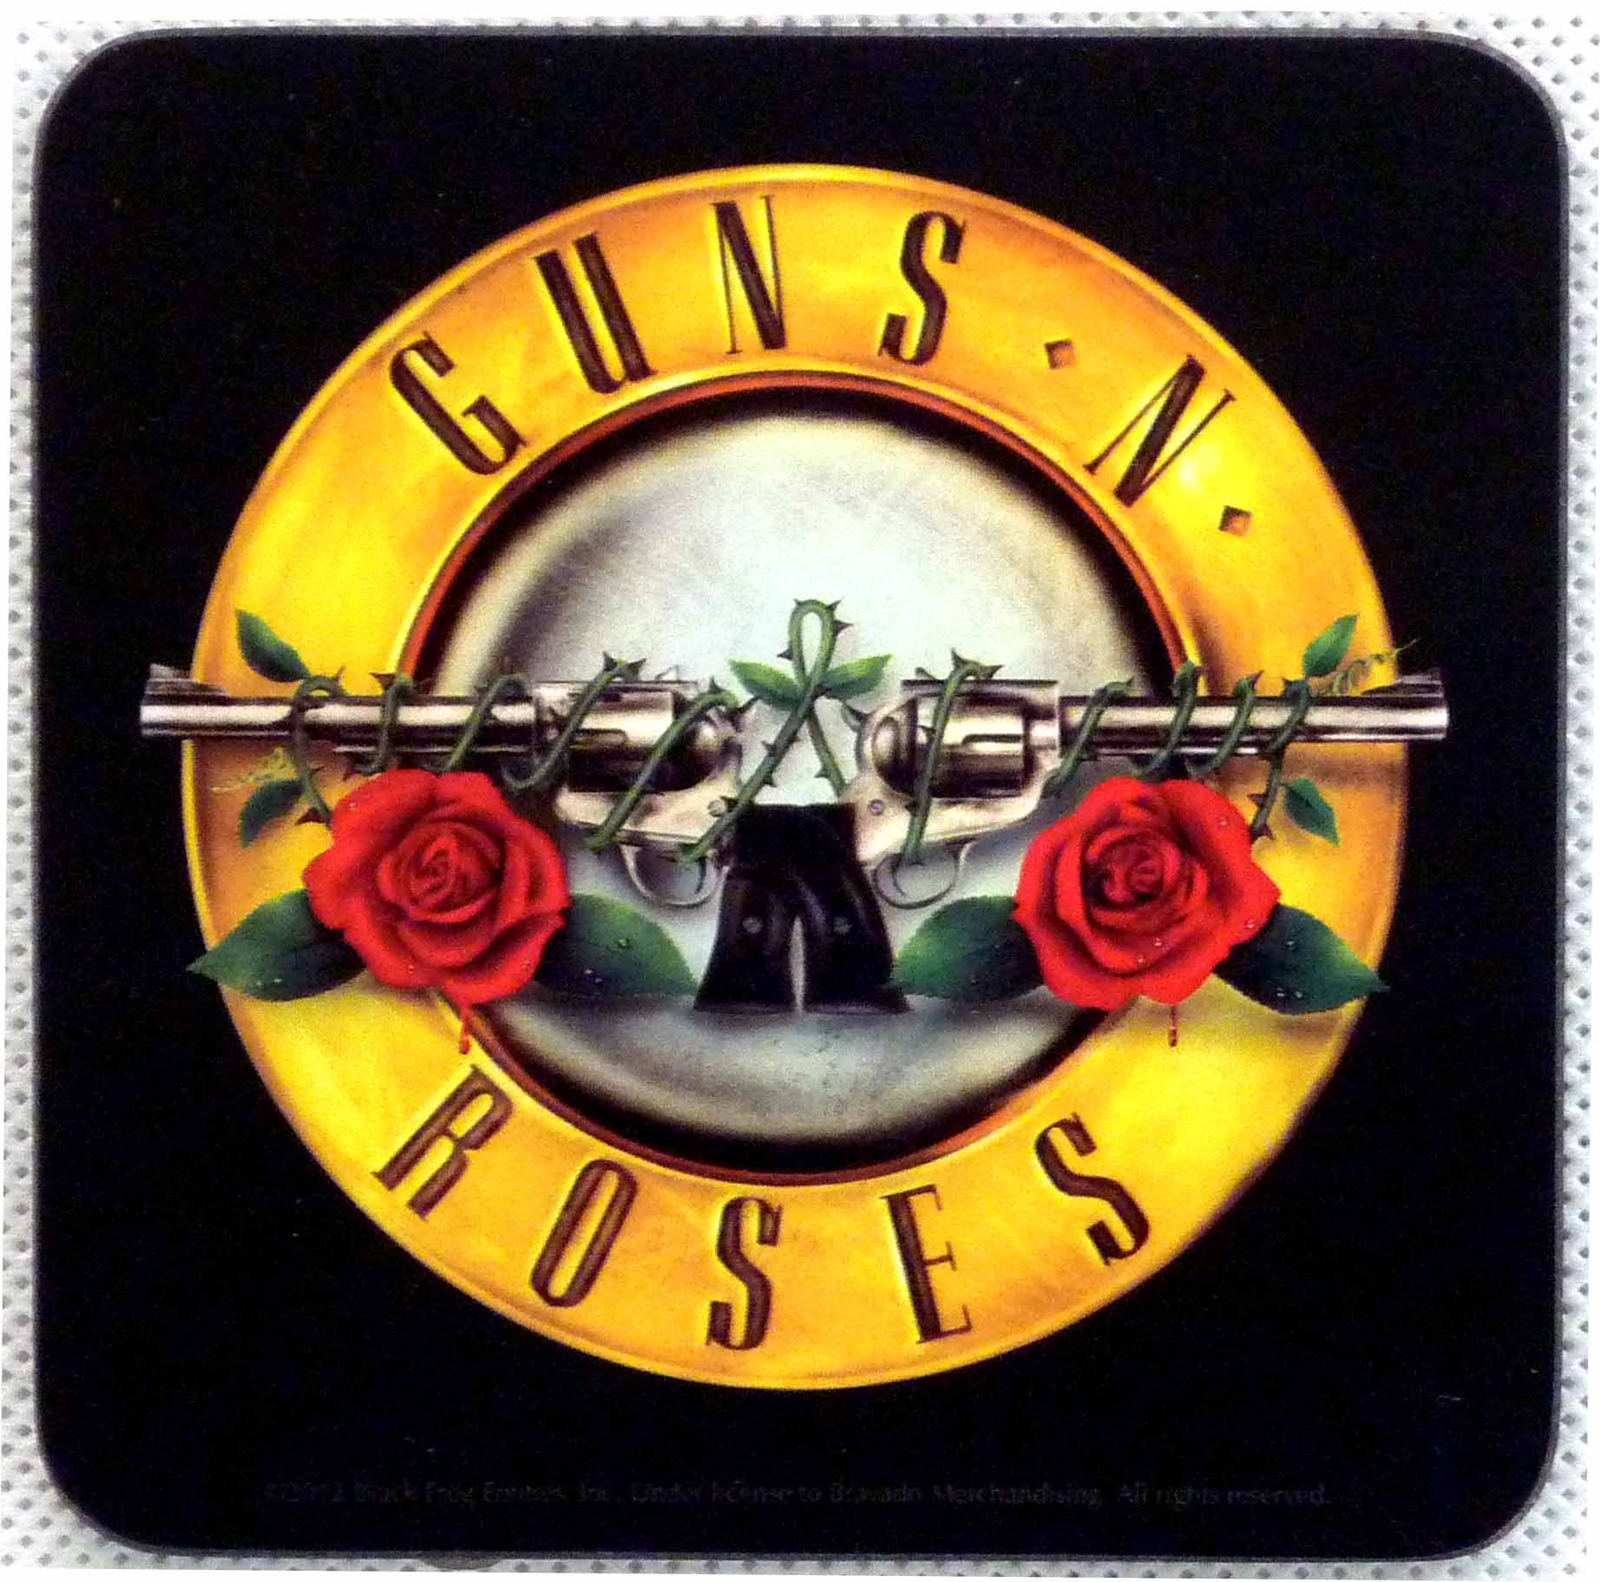 Guns and roses. 